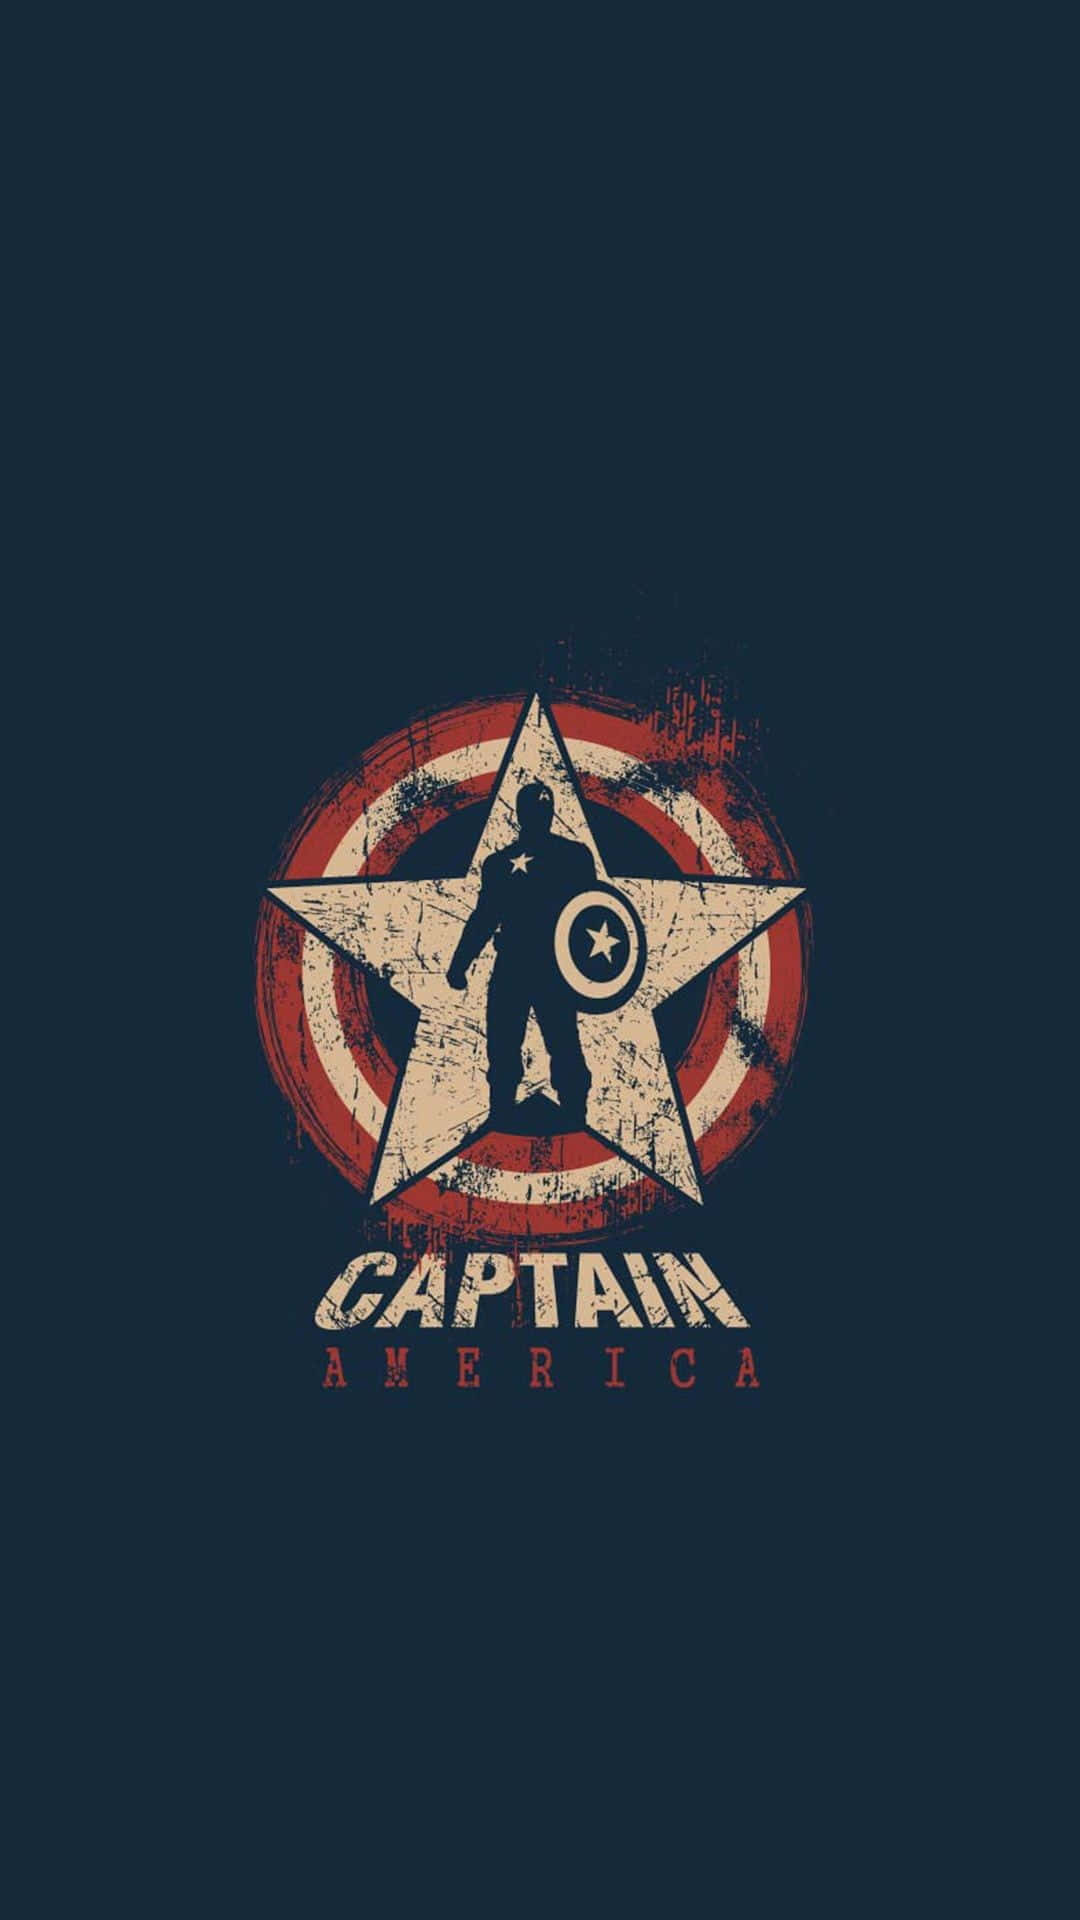 'inspiraciónretro: El Icónico Capitán América' Fondo de pantalla